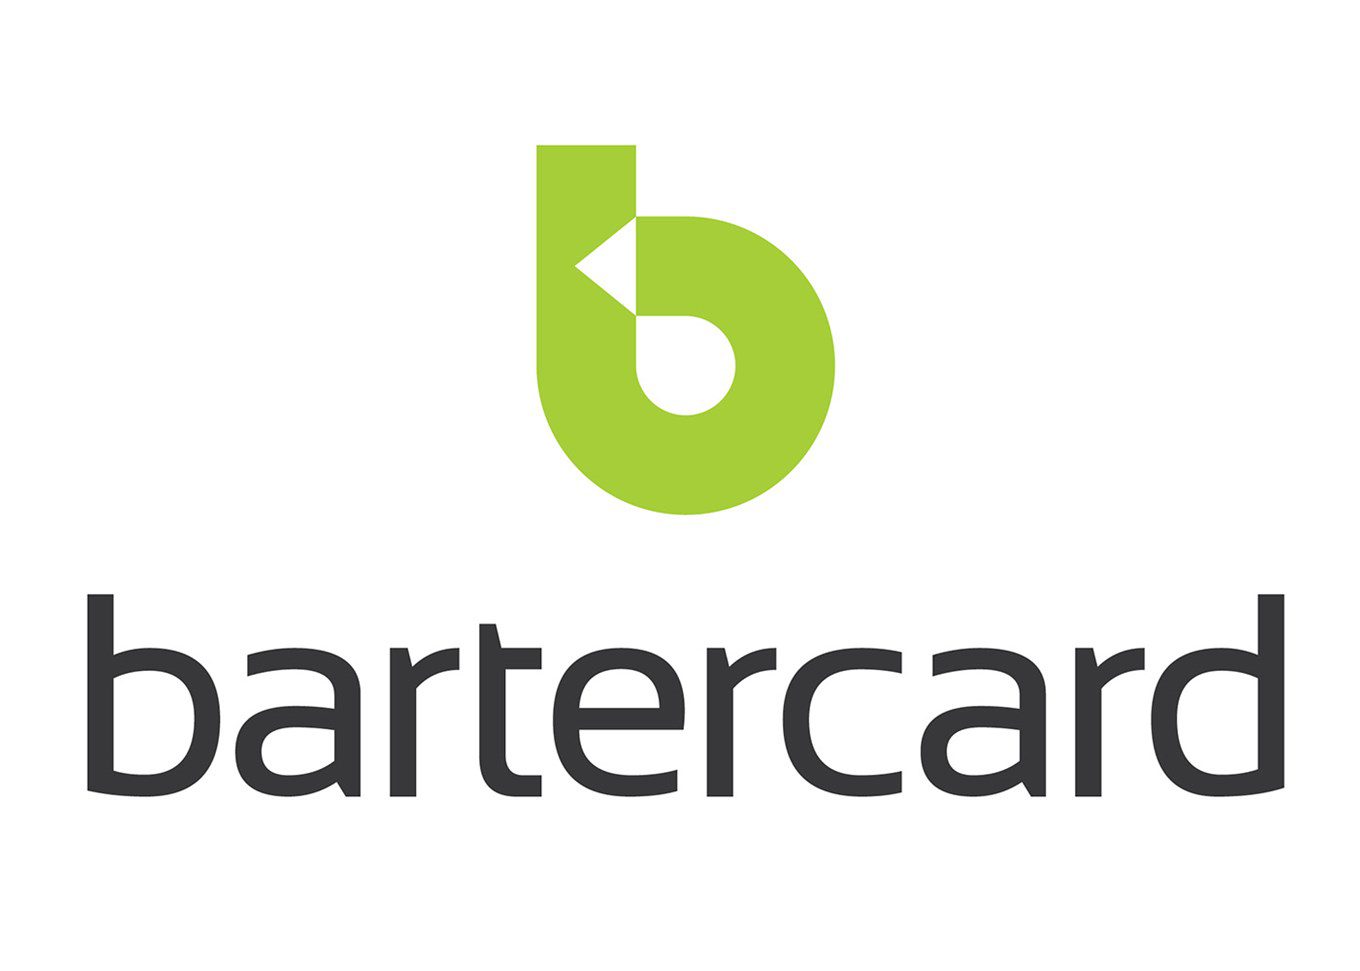 Bartercard